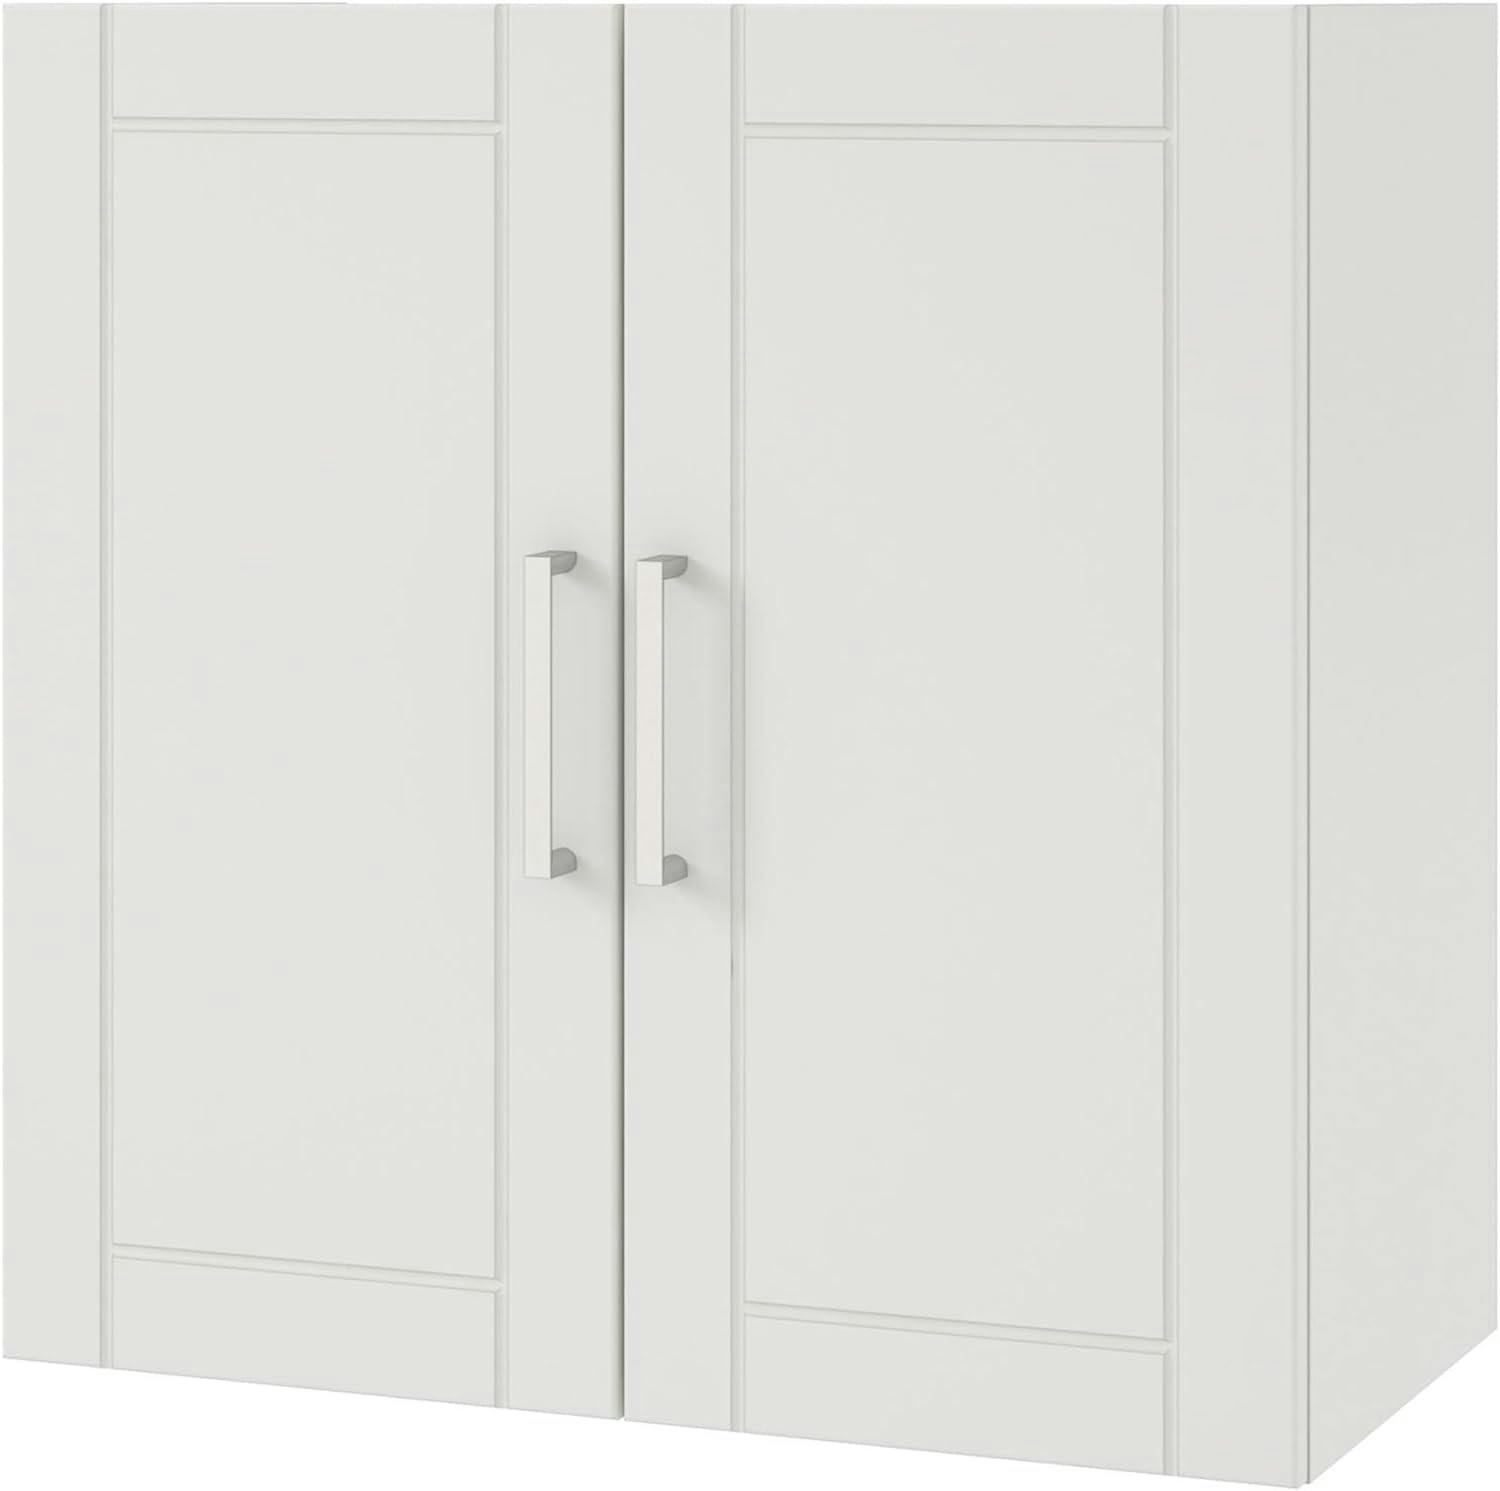 Callahan 24" White Laminated Shaker Wall Cabinet